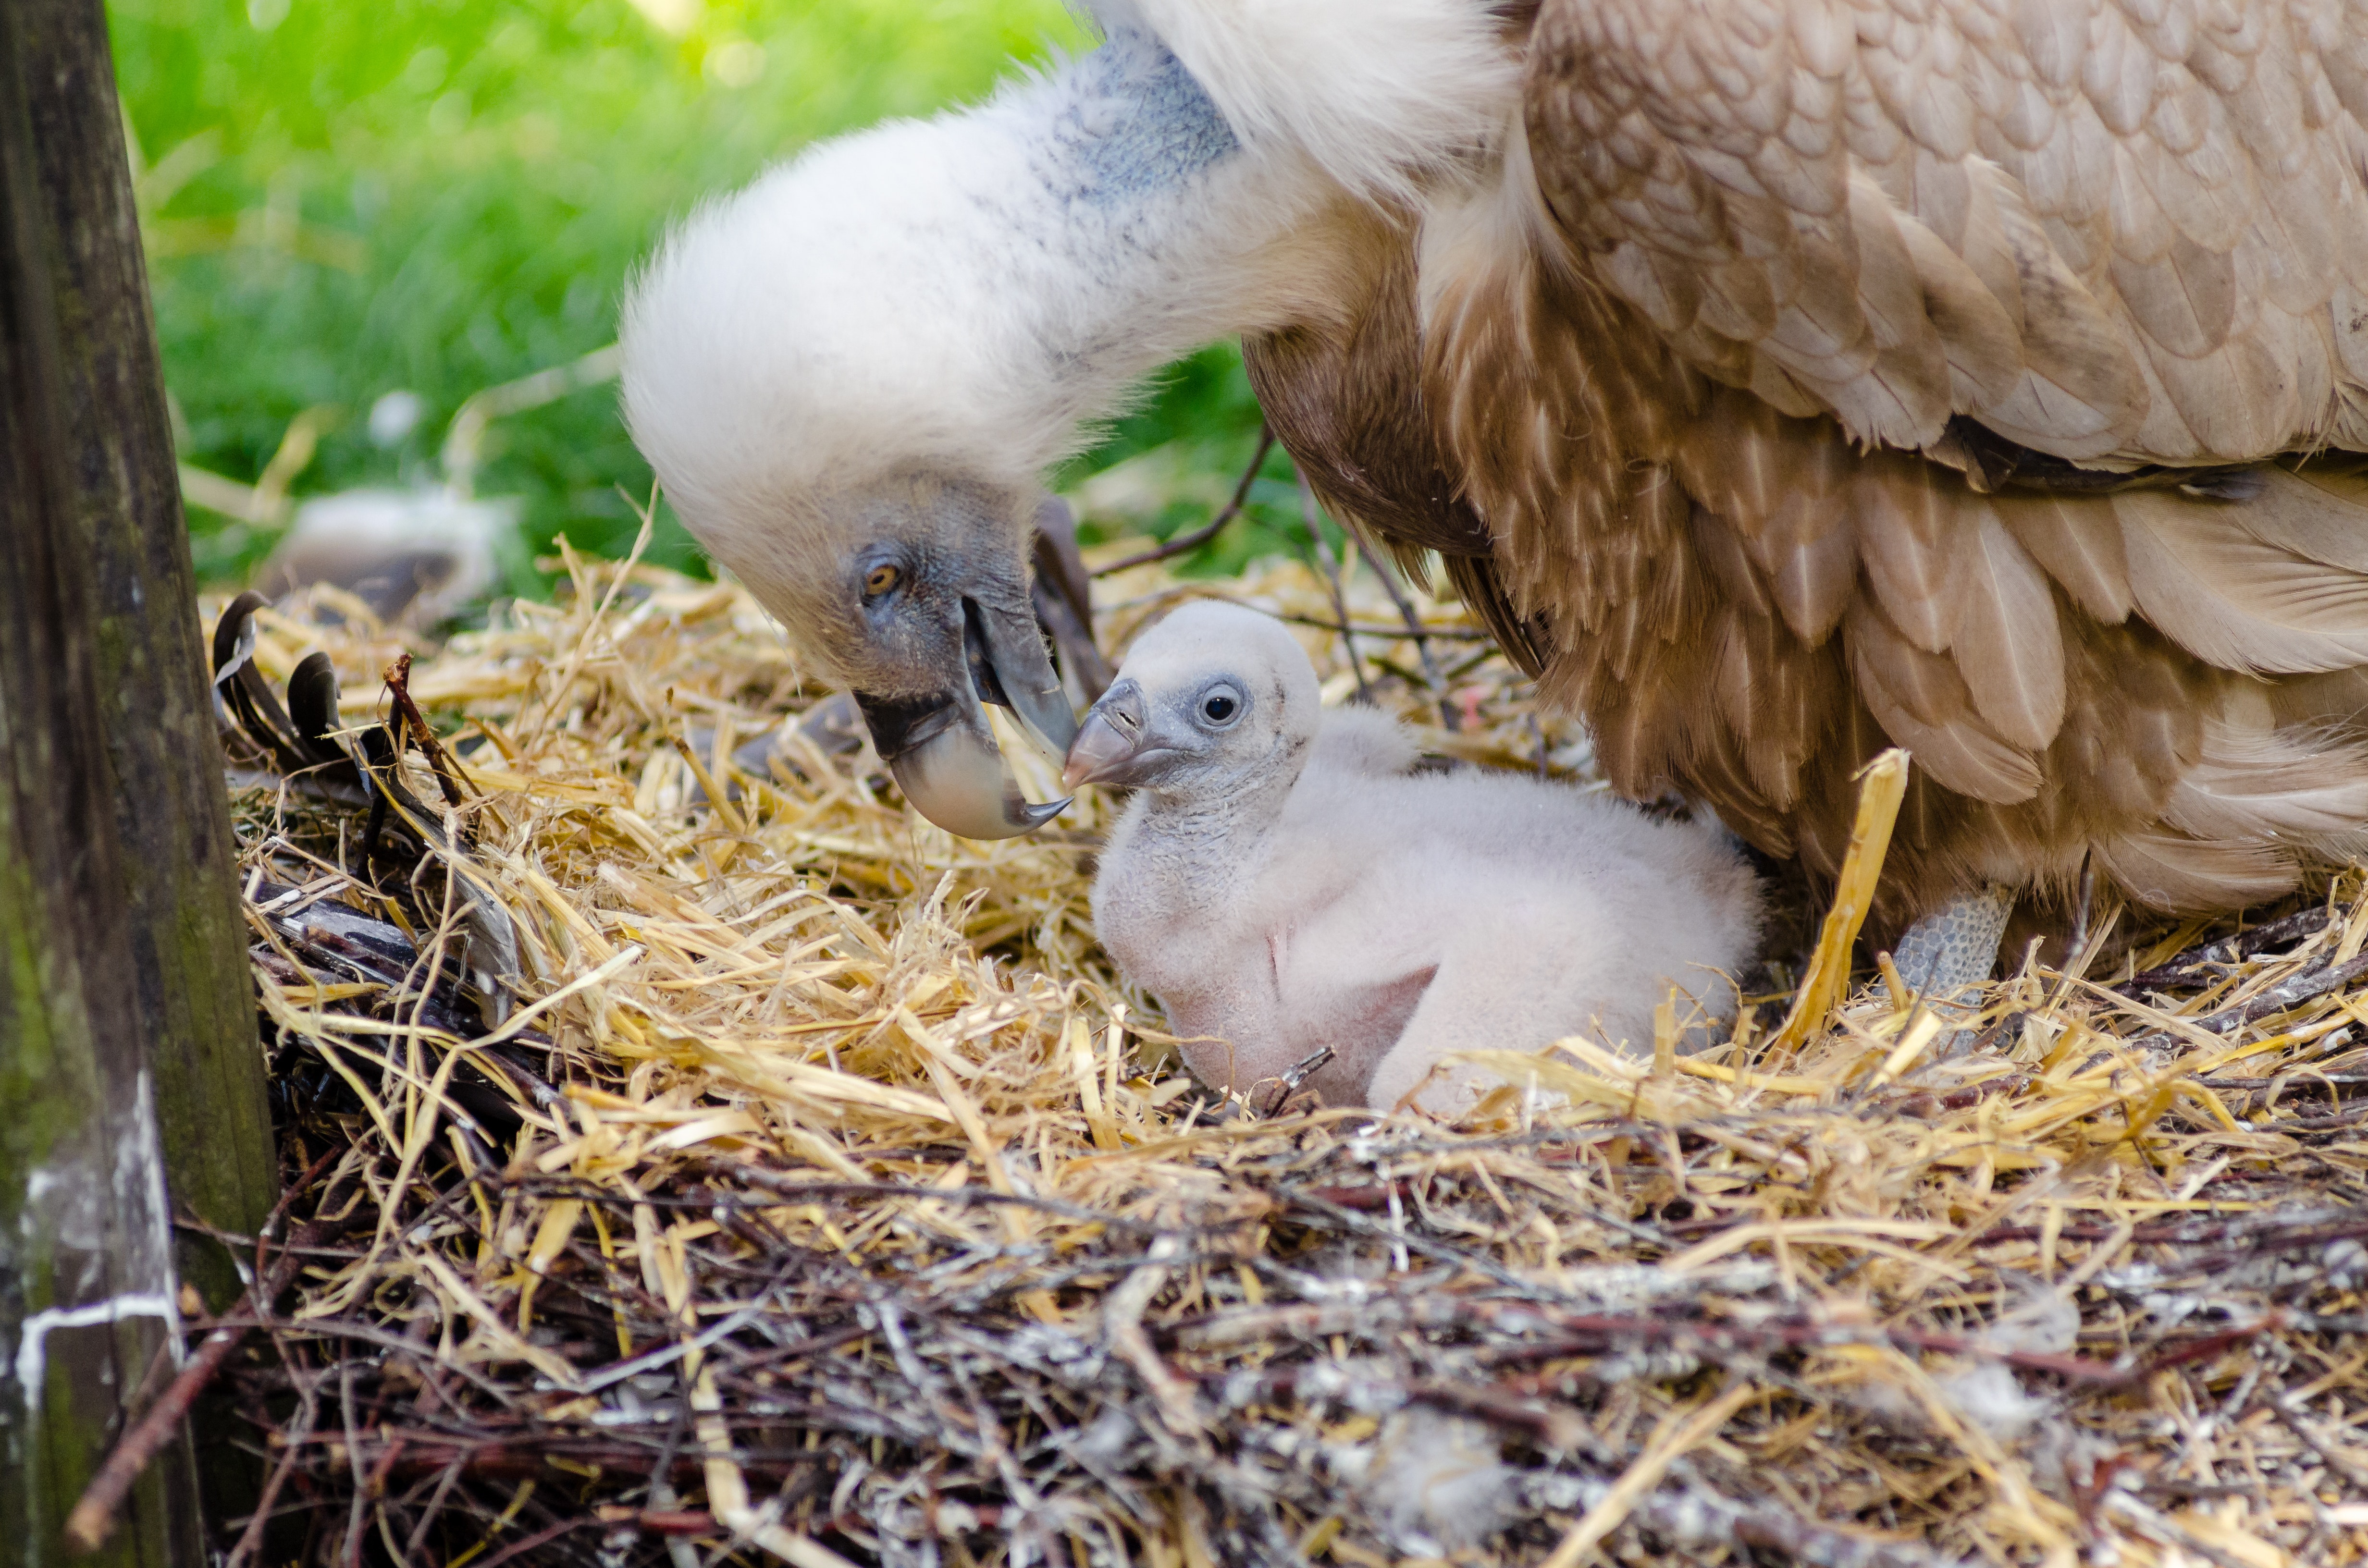 1000+ Great Bird Nest Photos · Pexels · Free Stock Photos